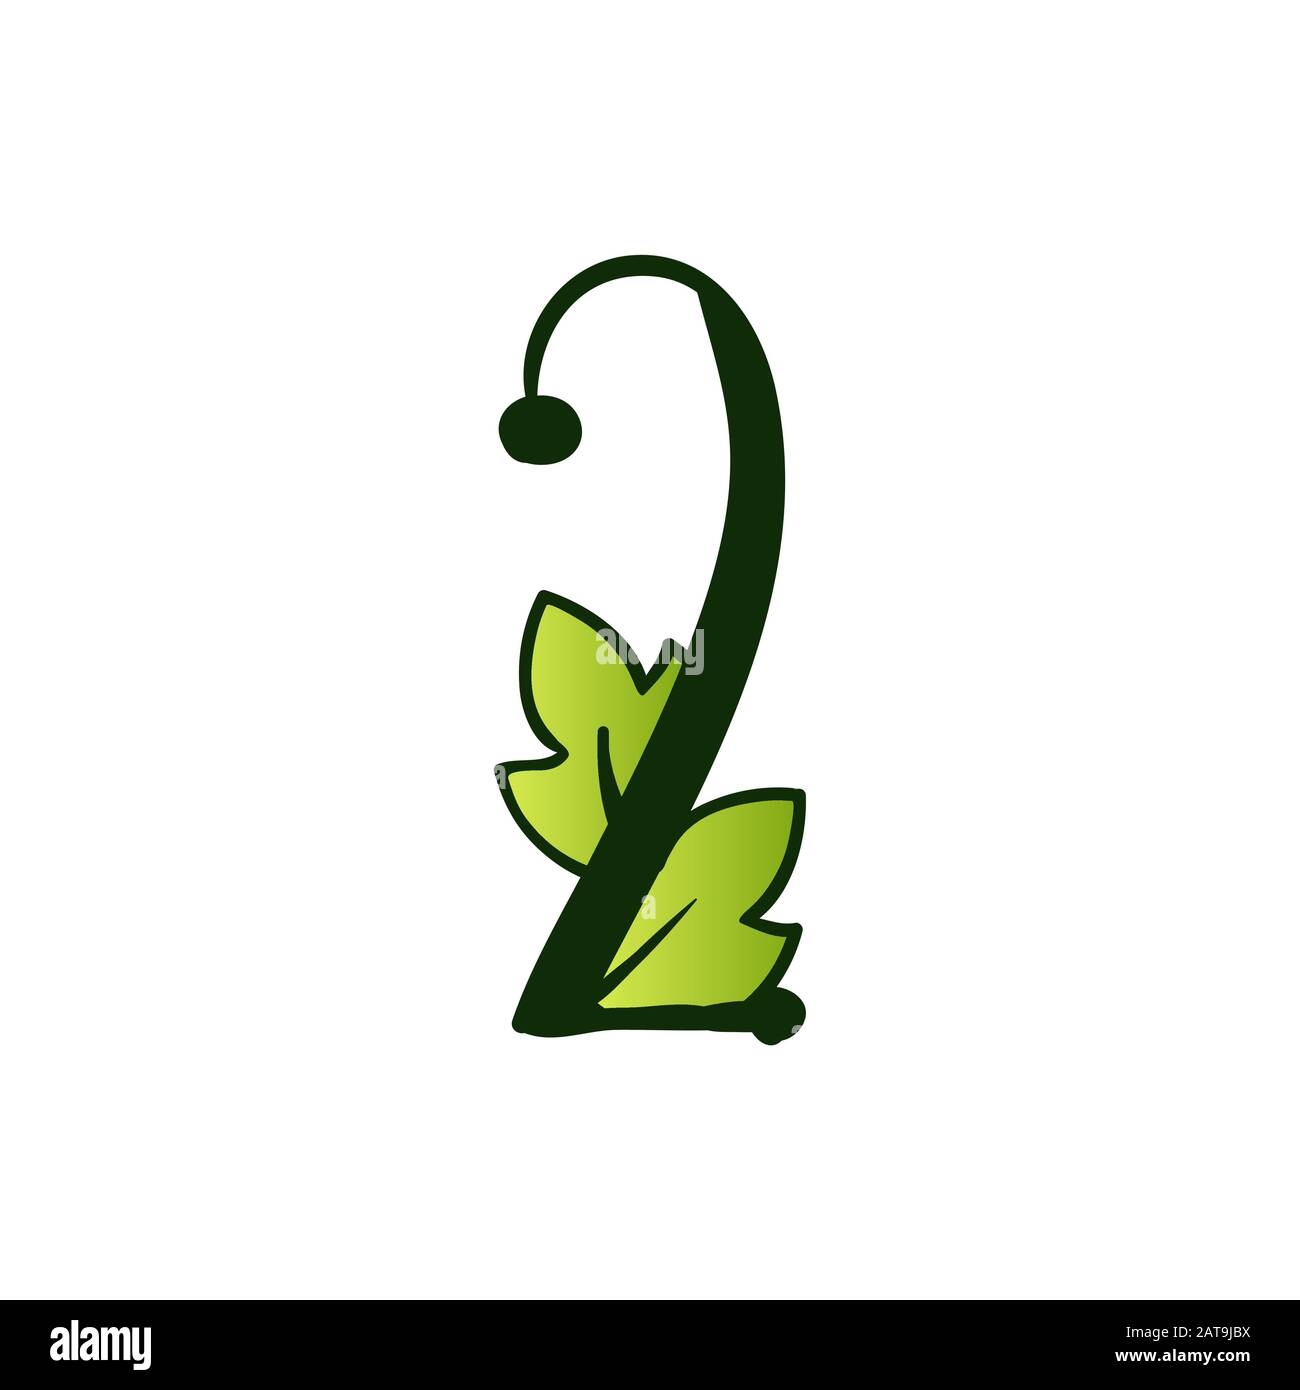 Green Doodling Eco Alphabet Due Numero Sign.Type Con Foglie. Maiuscole Latine Isolate. Tipografia grassetto Spring Letter o Doodle abc Caratteri per Monogram Parole e Logo. Illustrazione Vettoriale